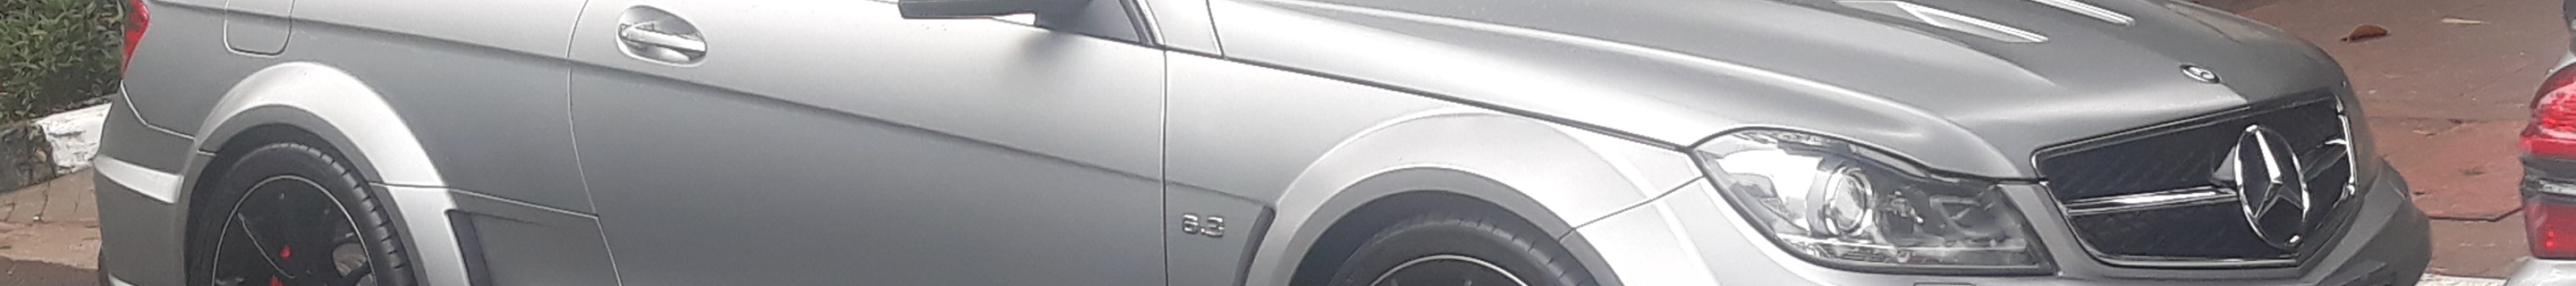 Mercedes-Benz C 63 AMG Coupé Black Series